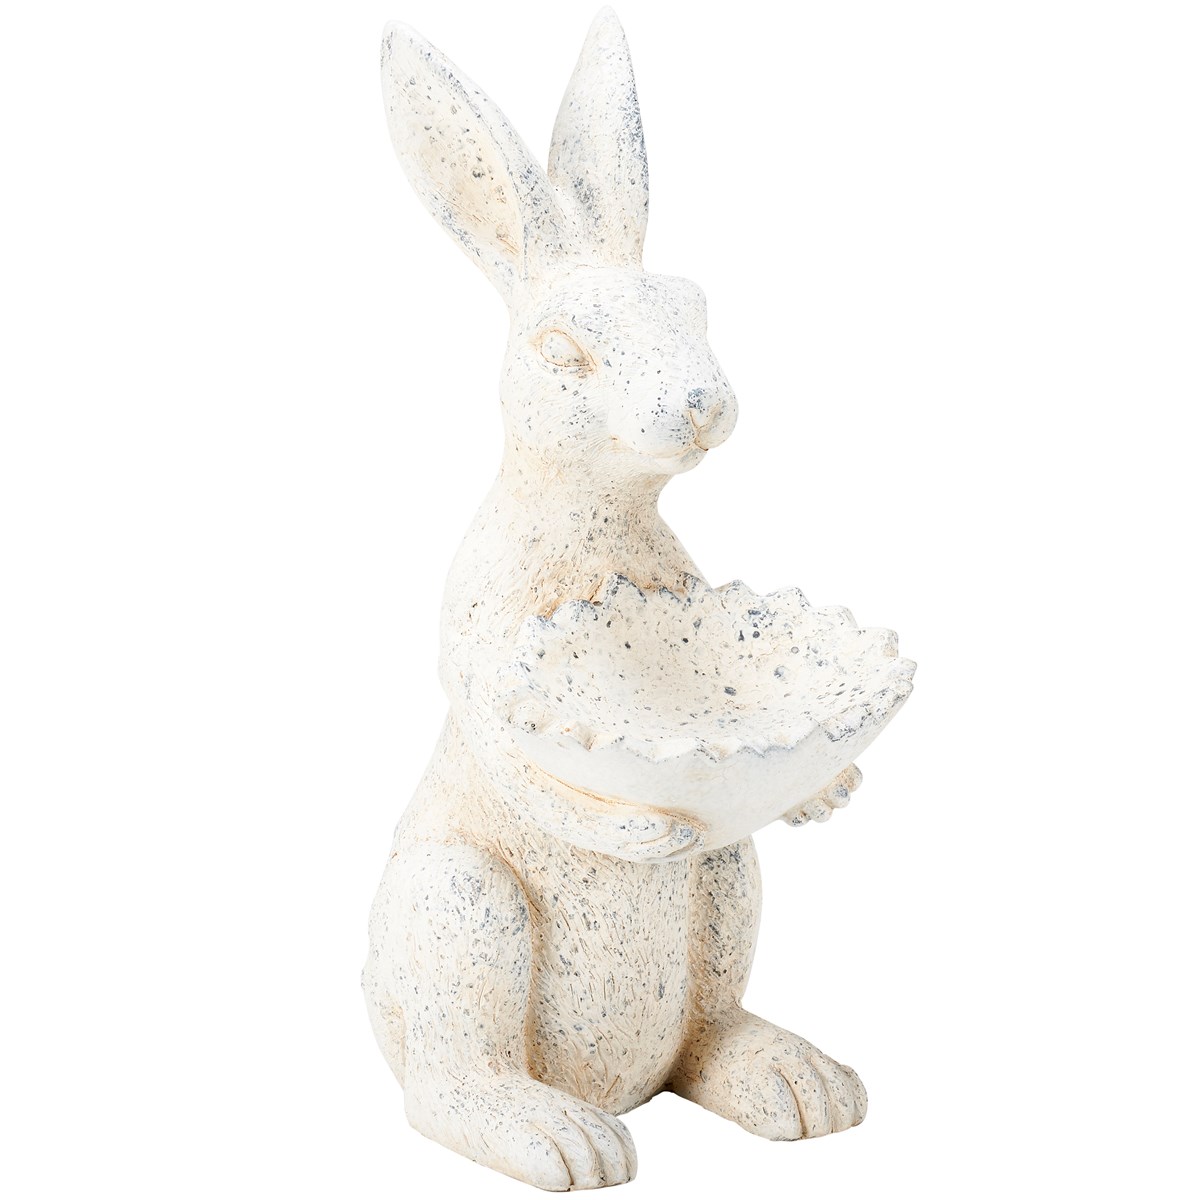 Bird Feeder Rabbit Figurine - Stoneware